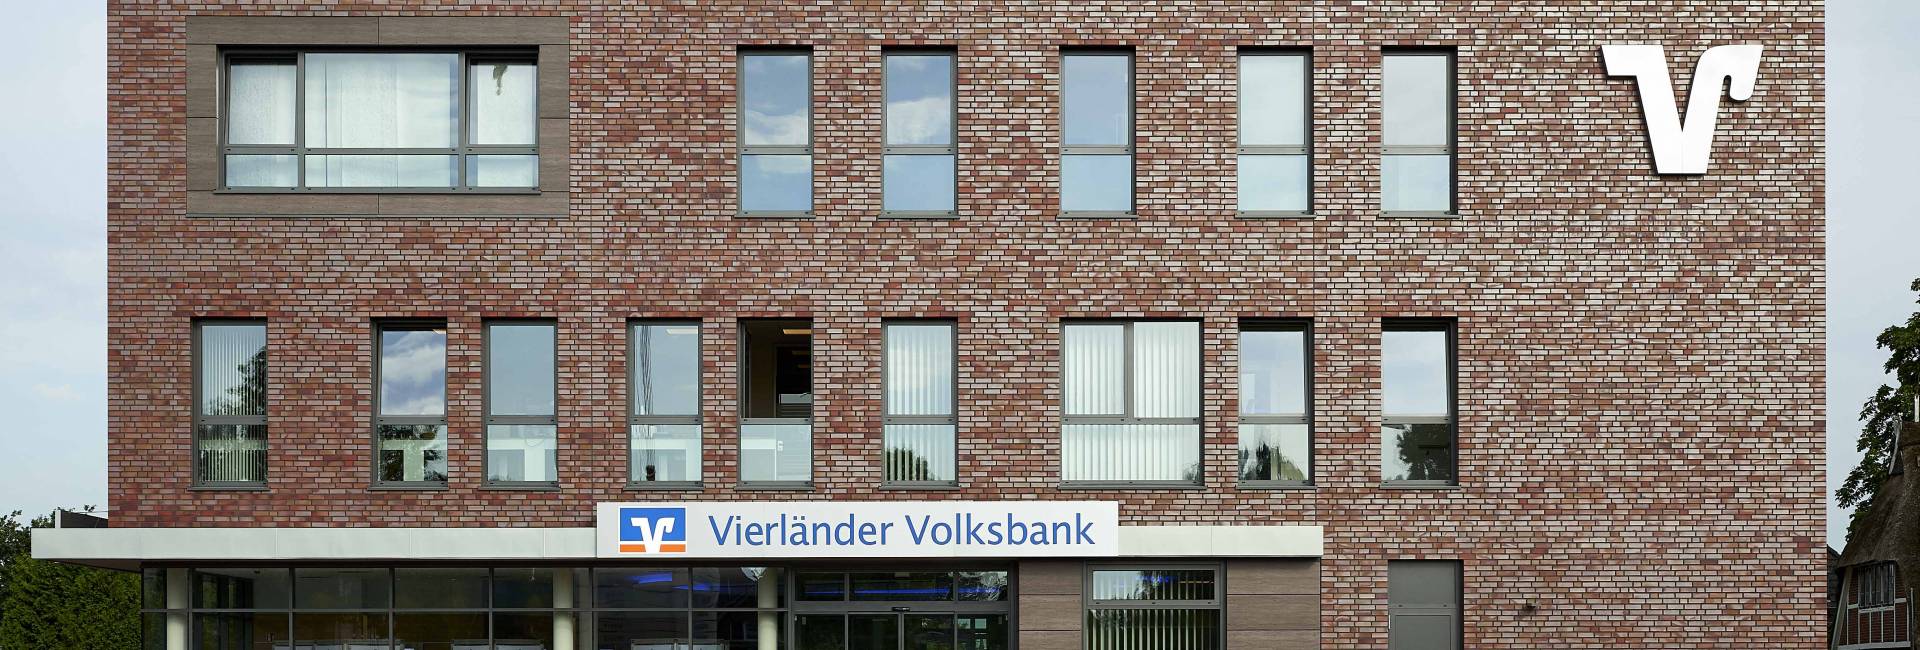 Vierländer Volksbank Kirchwerder, Hamburg - Bild 1